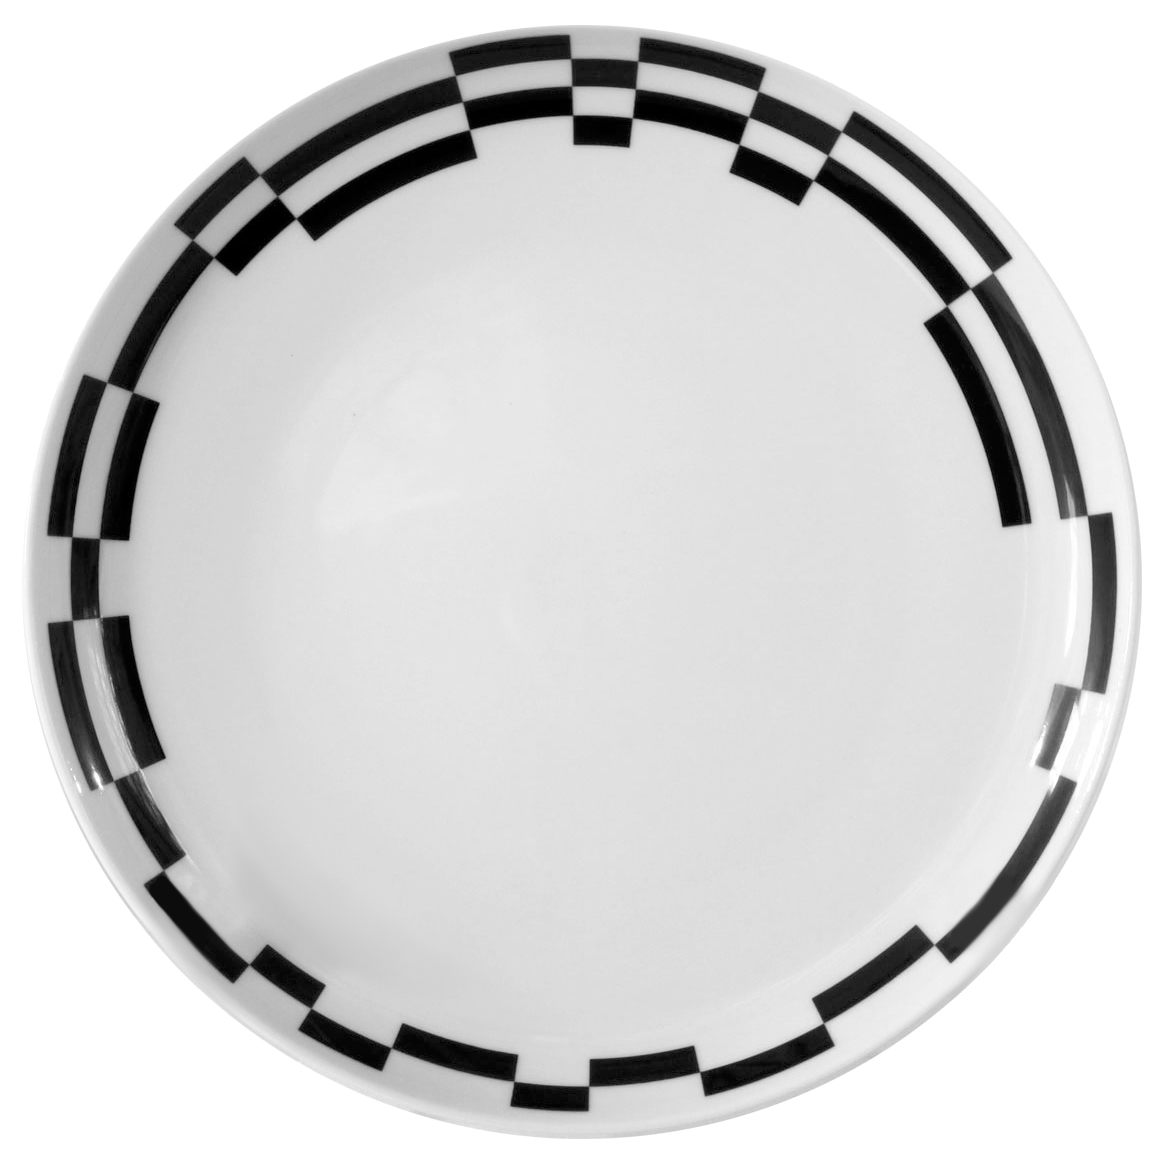 Тарелка десертная Thun Tom Черно-белые полоски 19 см тарелка десертная thun tom радужное настроение 19 см